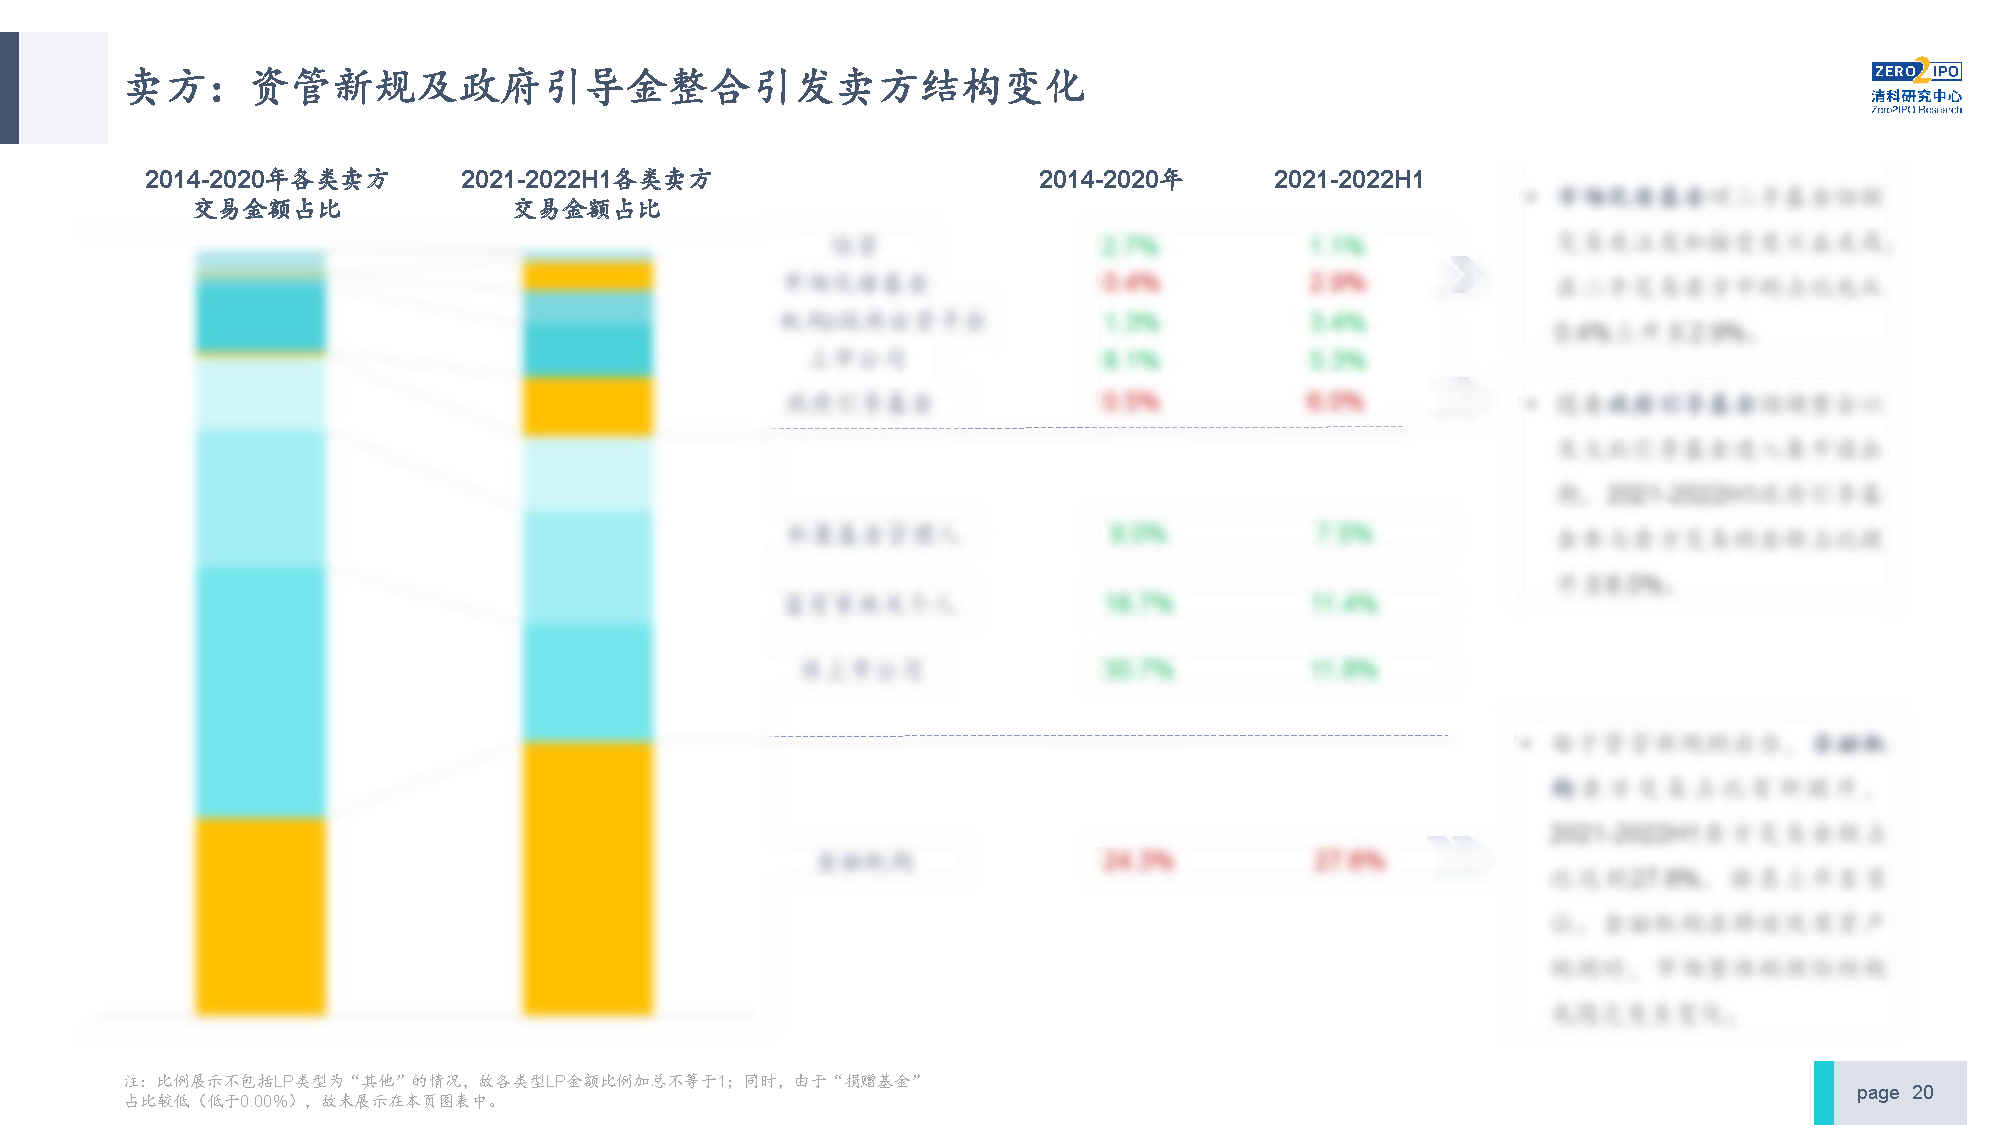 【发布版】2022年中国私募股权S交易研究报告_页面_20.png